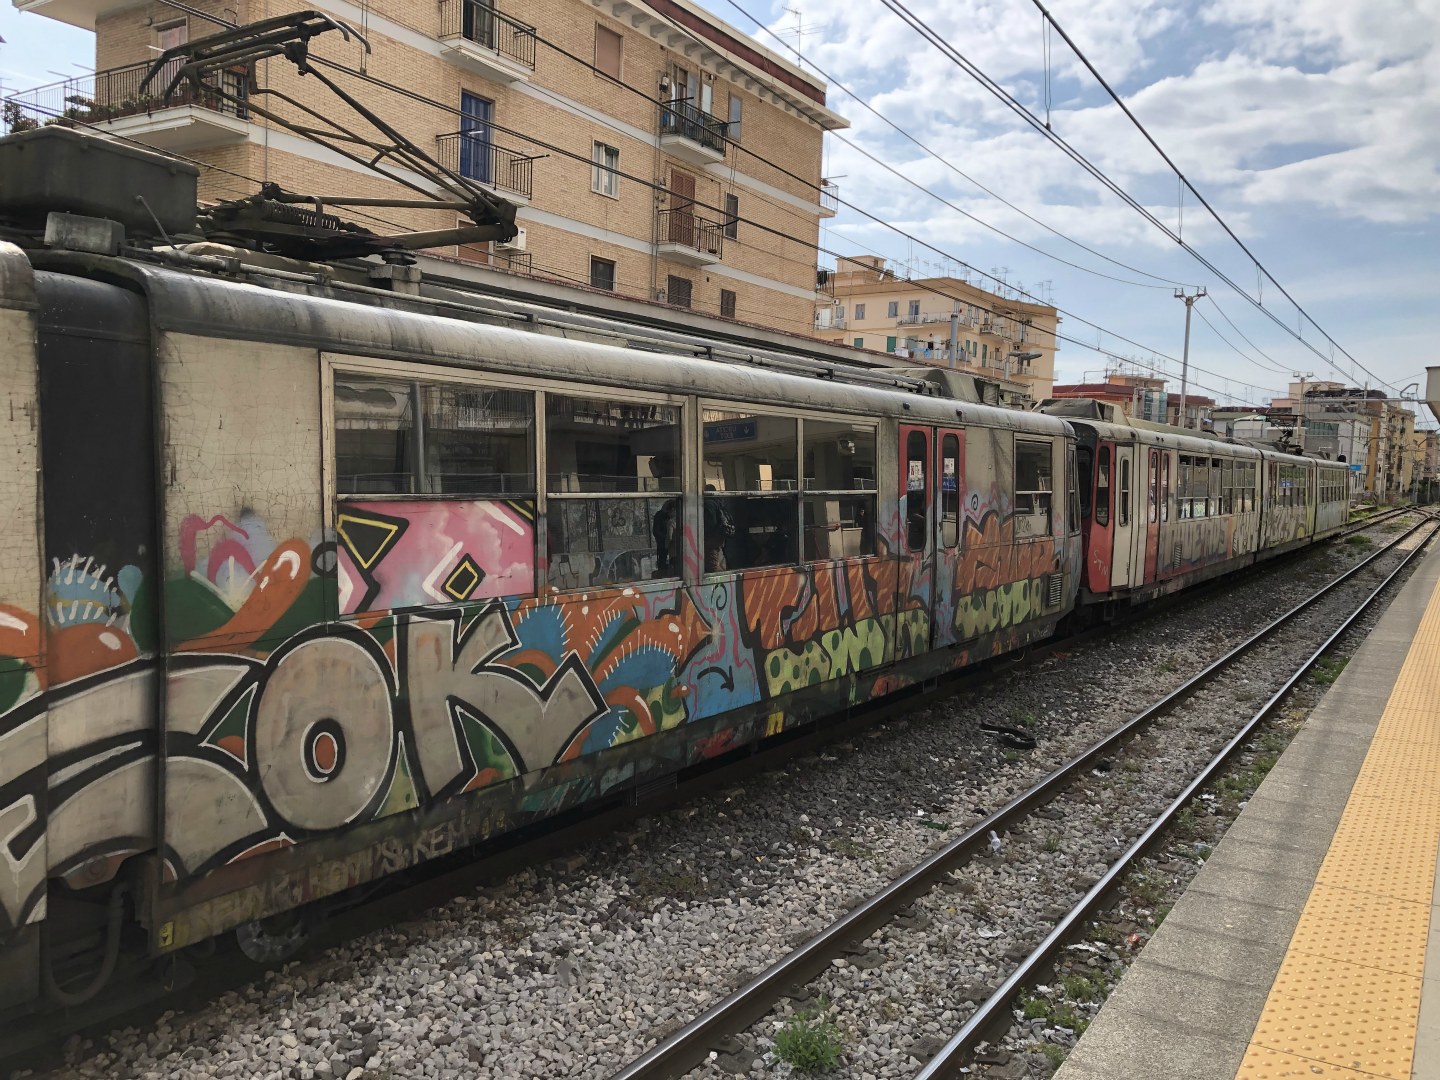 Train at Ercolano Scavi Station